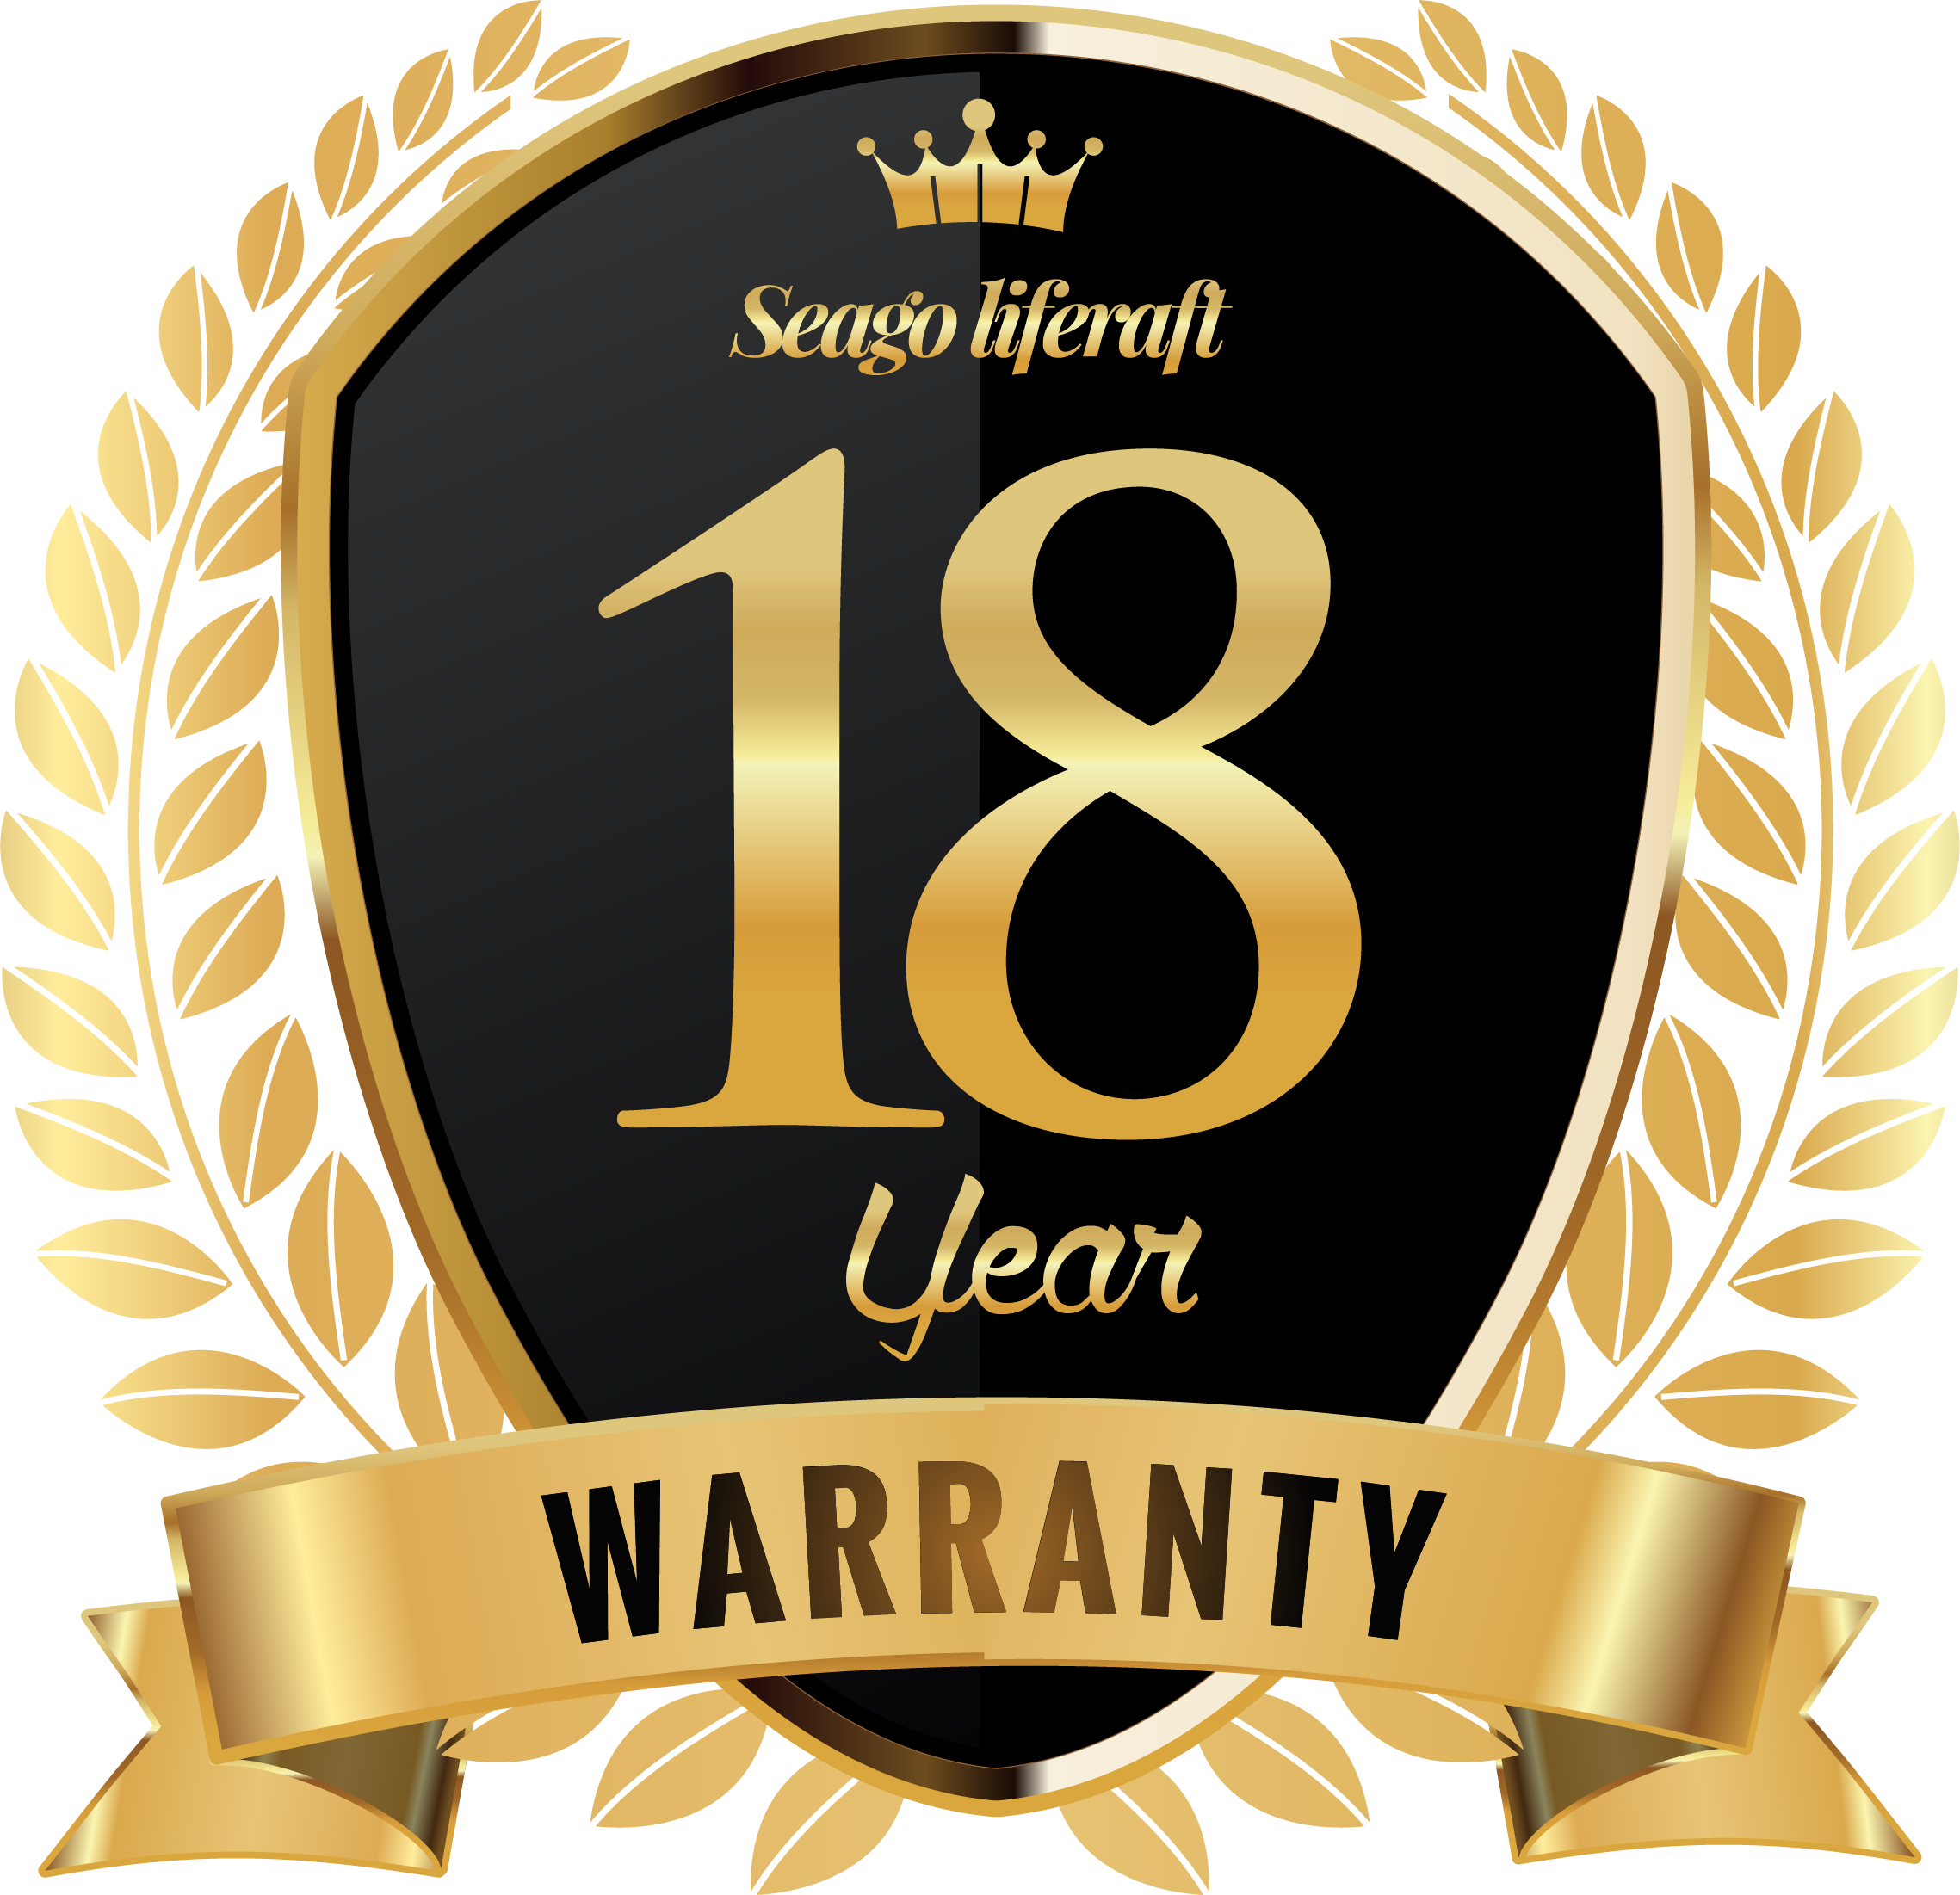 Seago 18 year liferaft warranty